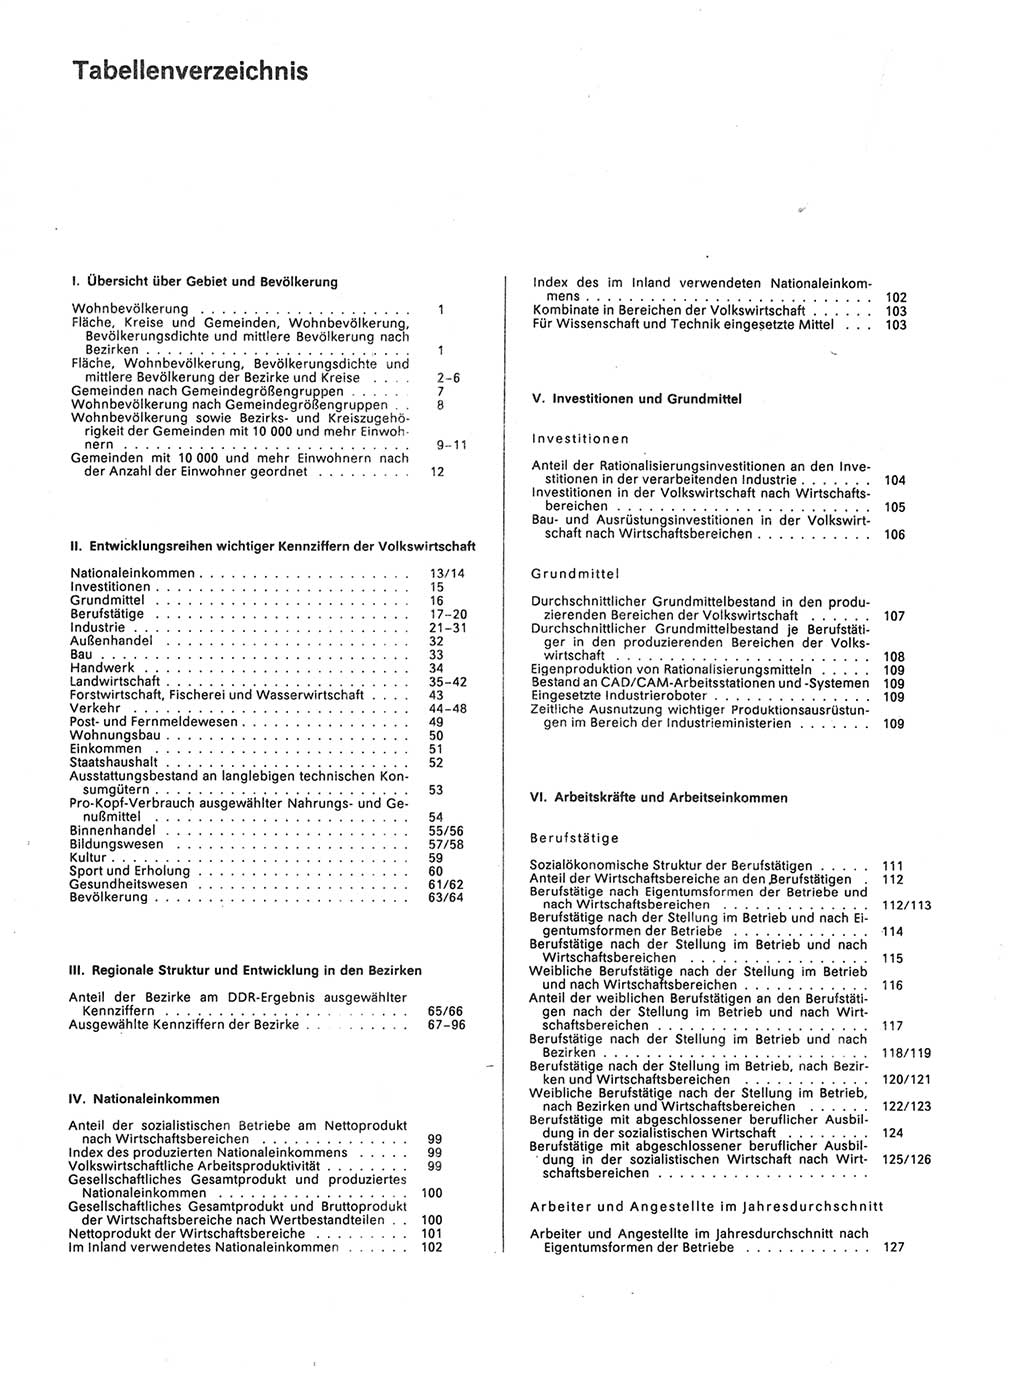 Statistisches Jahrbuch der Deutschen Demokratischen Republik (DDR) 1988, Seite 6 (Stat. Jb. DDR 1988, S. 6)